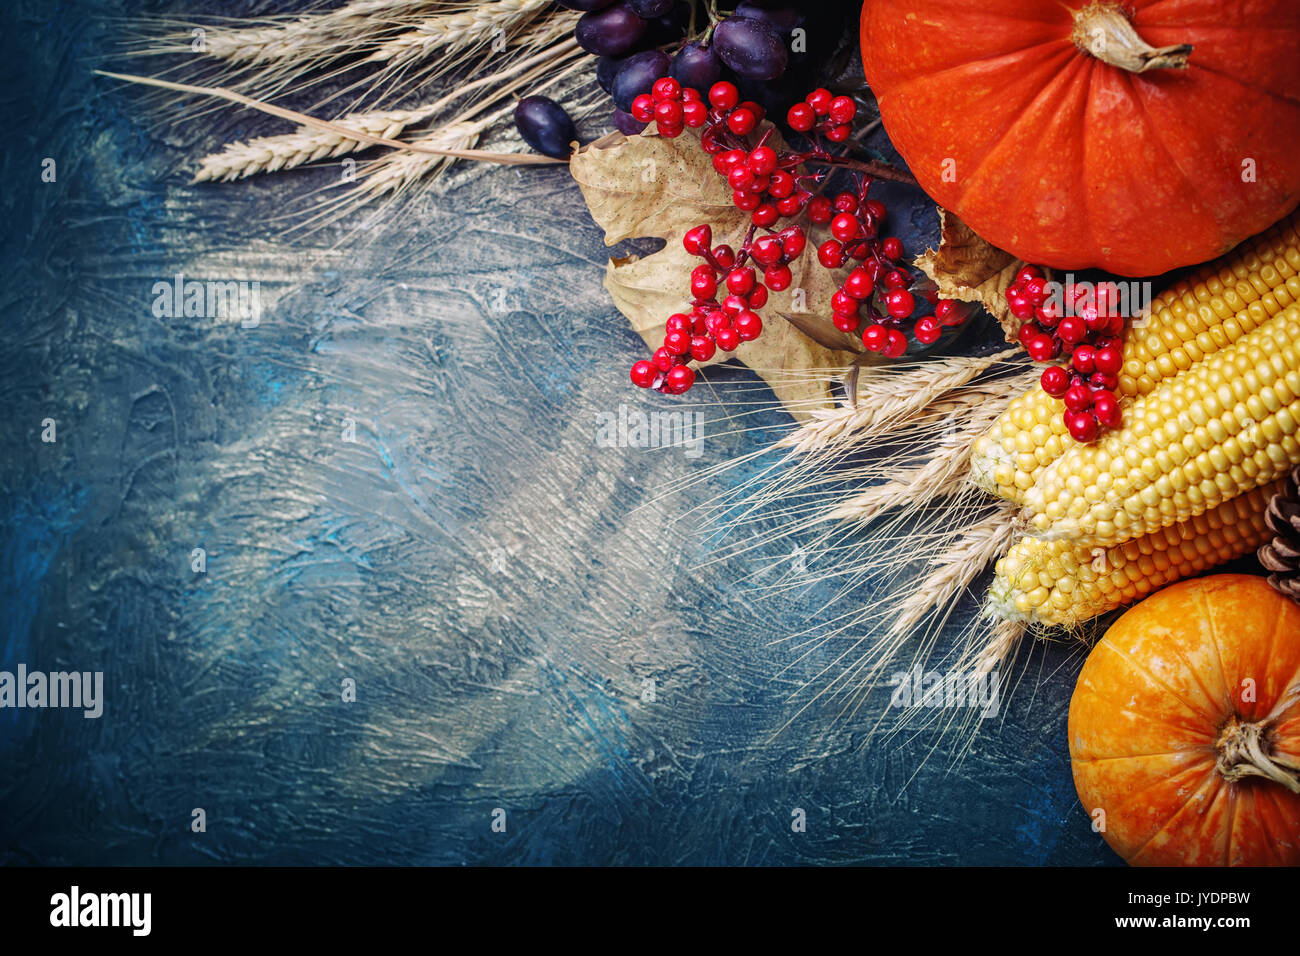 La tabla, decorados con frutas y verduras. Festival de la cosecha,Feliz Día de Acción de Gracias. Foto de stock